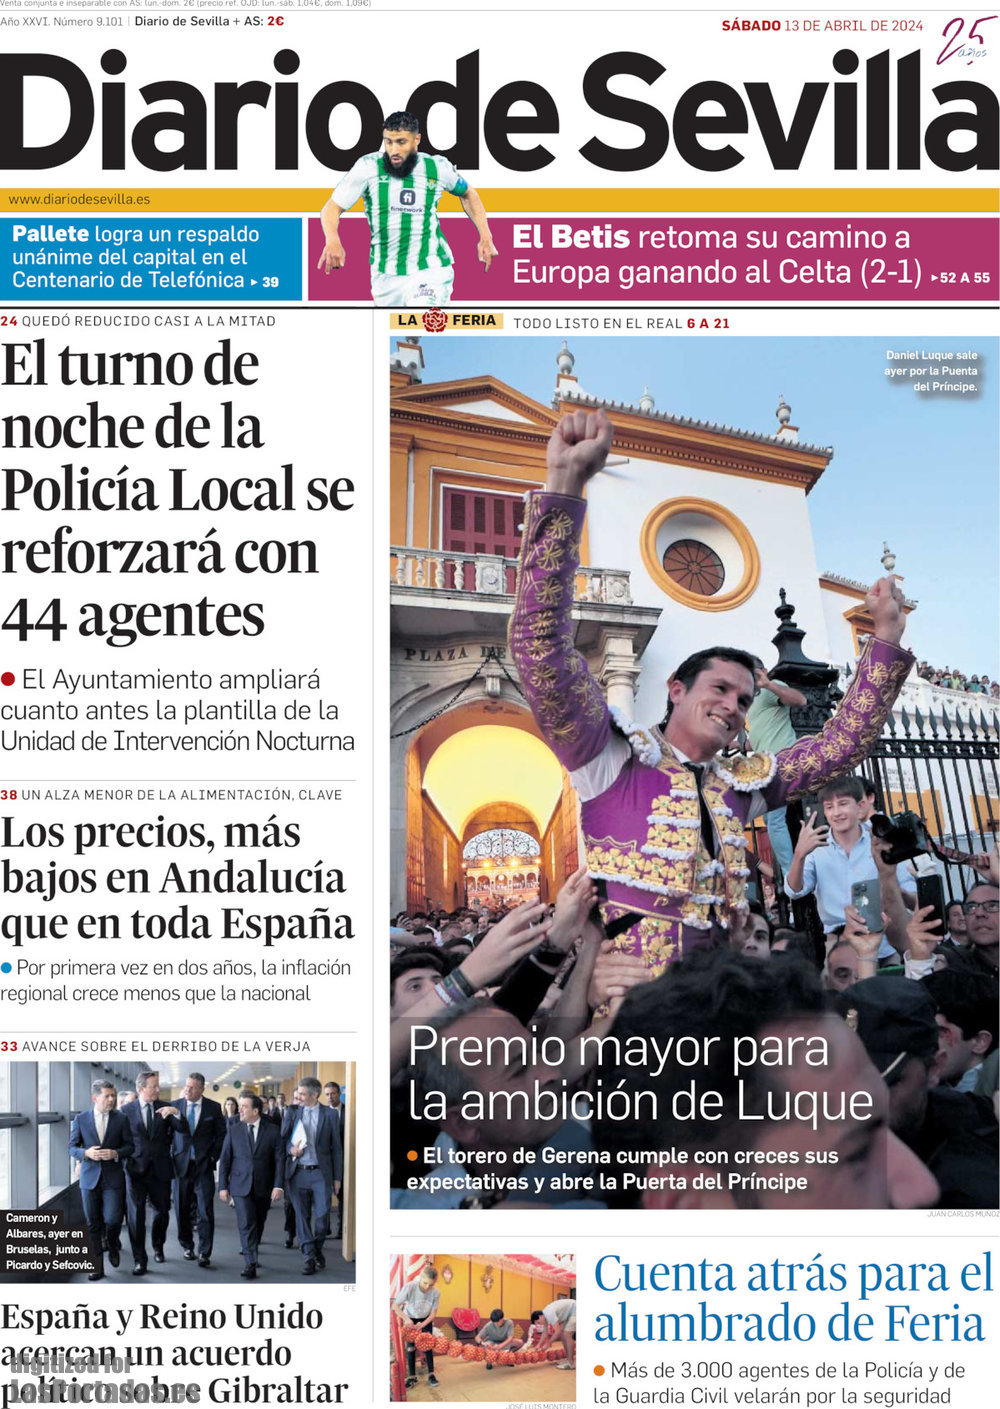 Diario de Sevilla